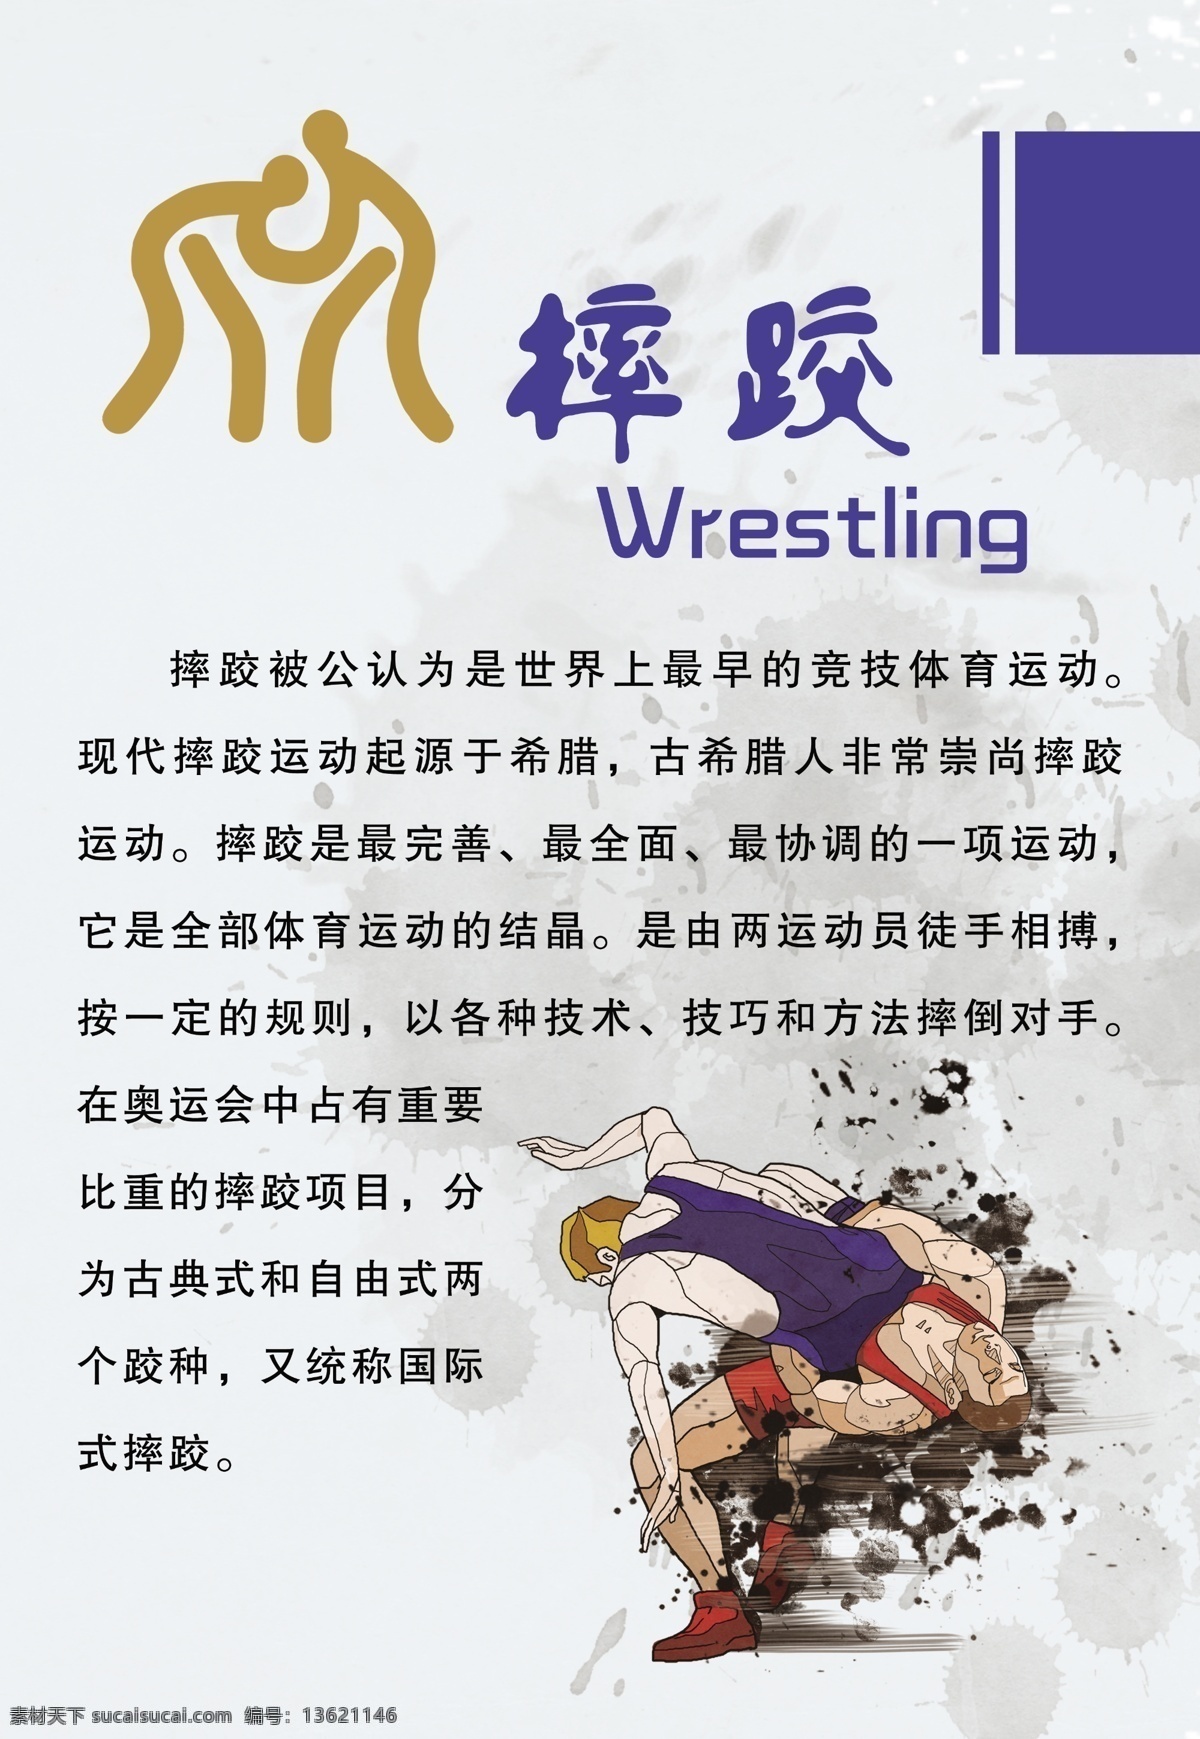 摔跤素材下载 摔跤模板下载 摔跤 wrestling 竞技体育运动 古典式 自由式 国际式 常永祥 分层 源文件 白色